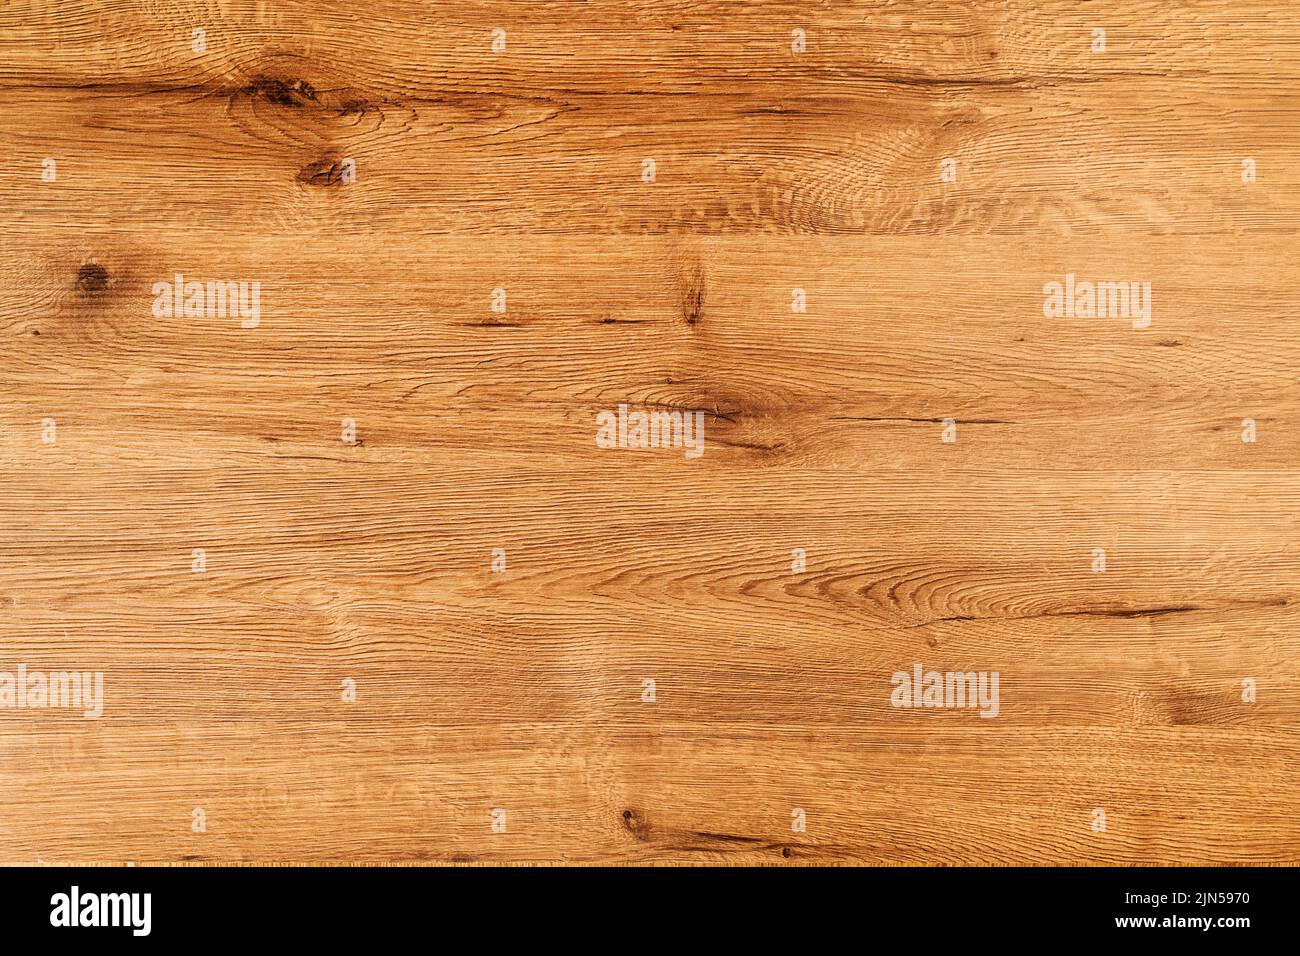 Texture de chêne récupérée comme arrière-plan, vue de dessus de la surface en bois Banque D'Images